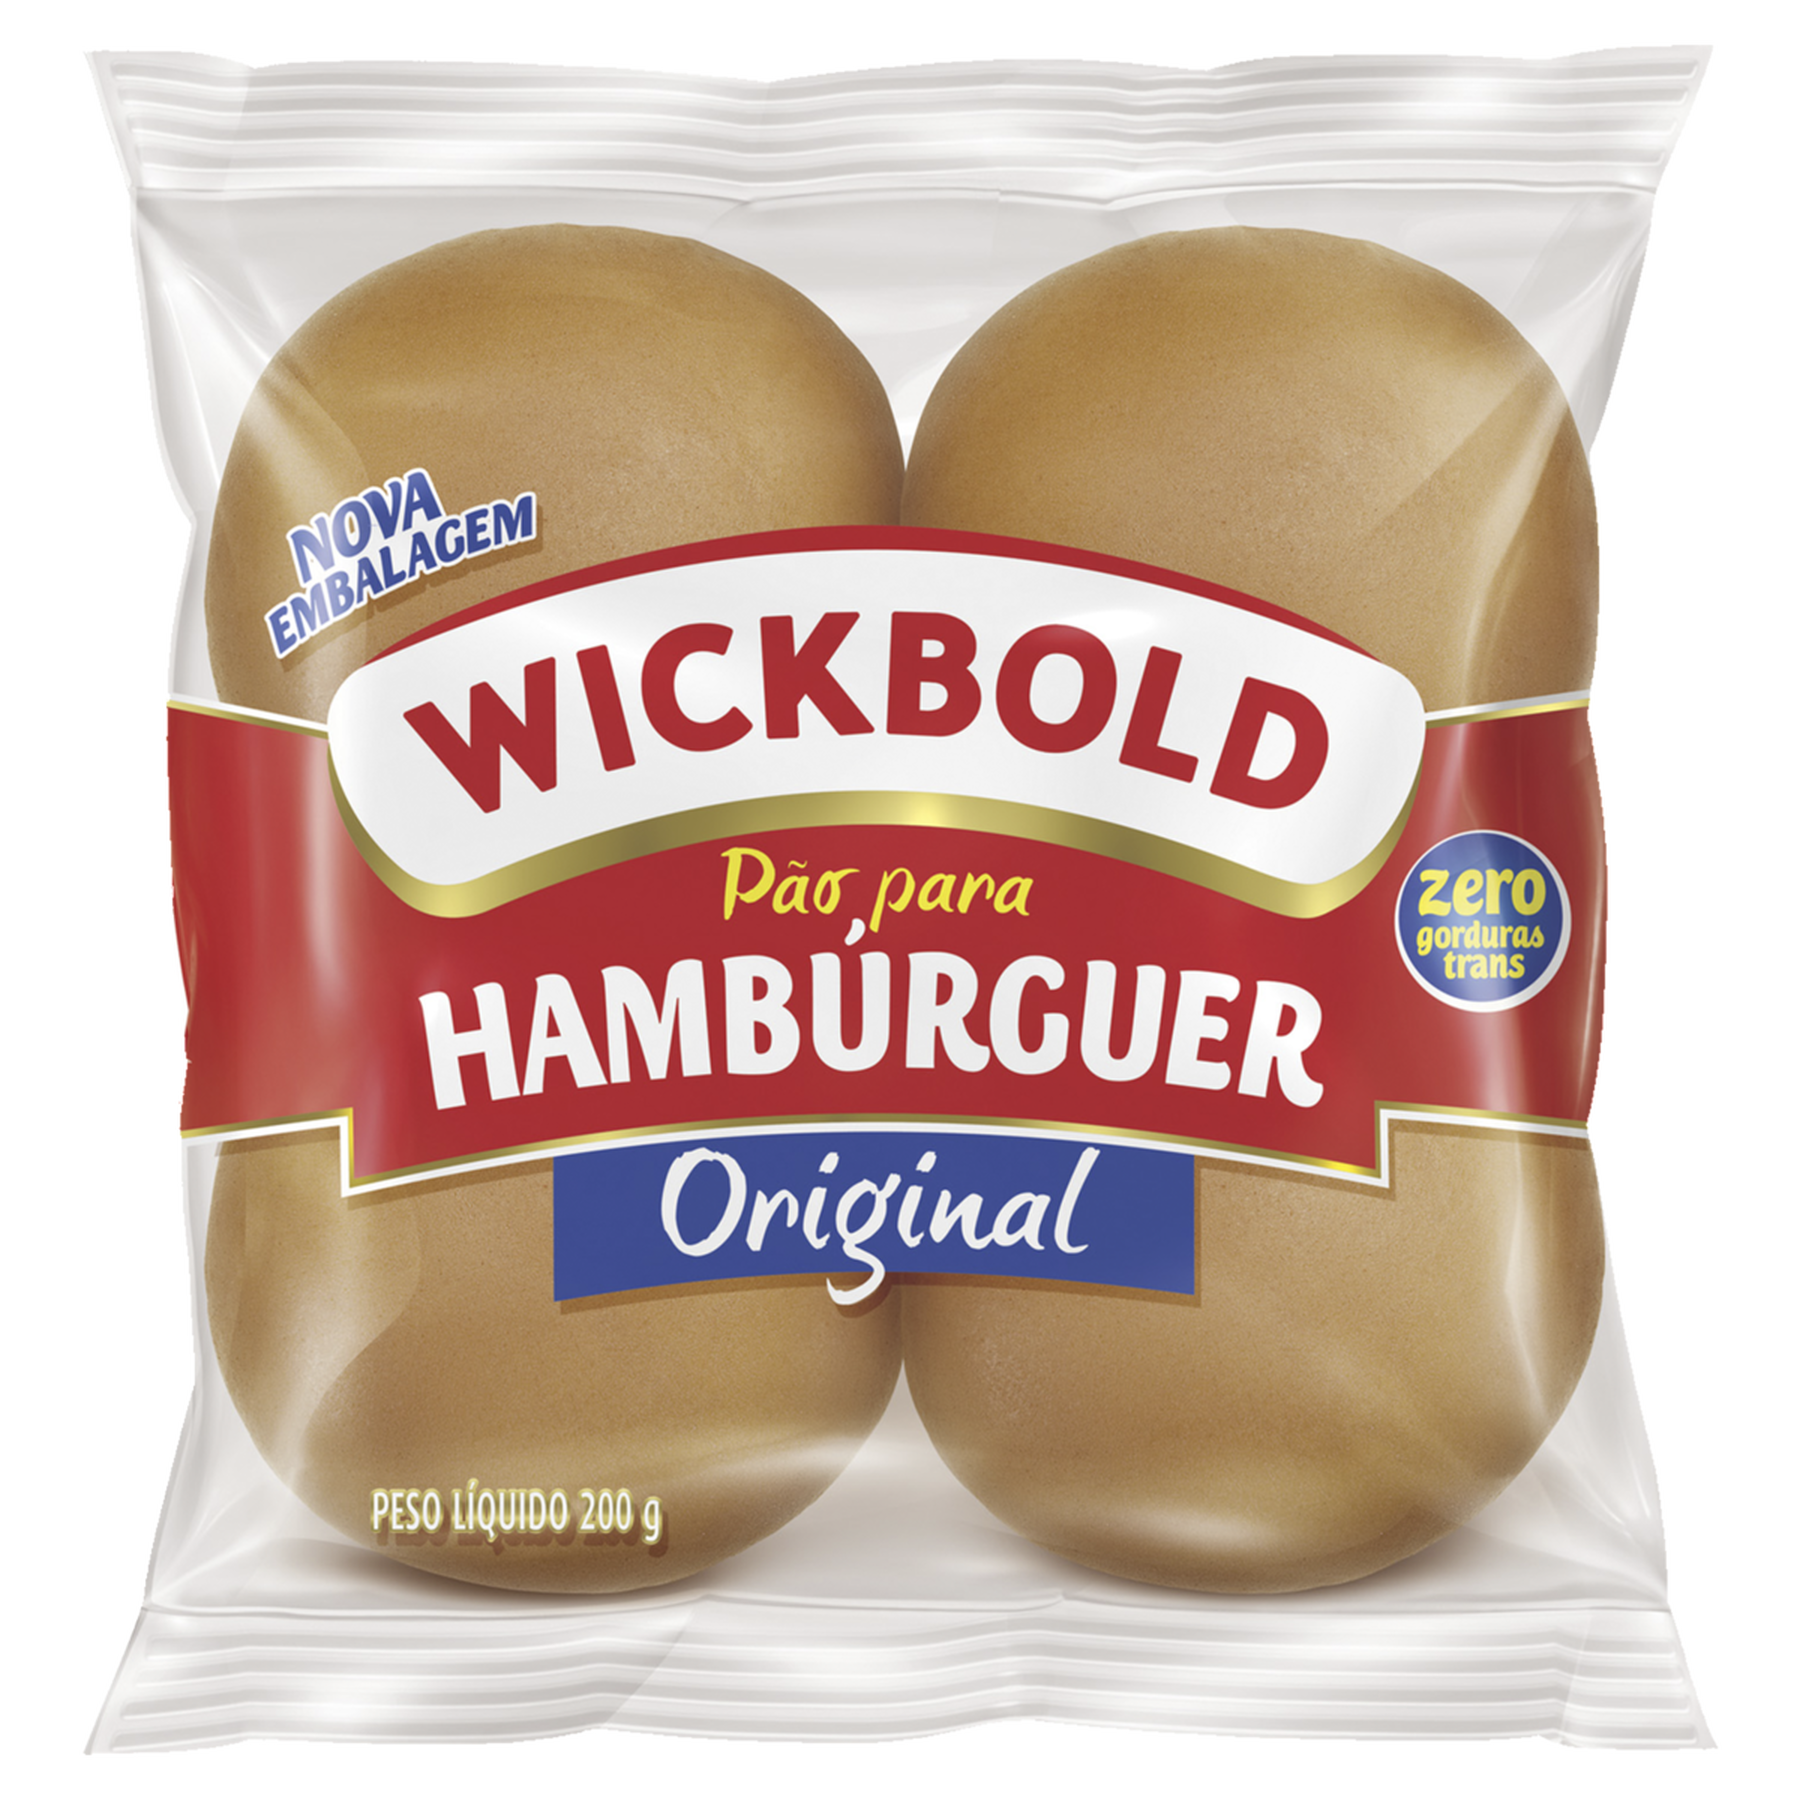 Pão para Hambúrguer Original Wickbold Pacote 200g